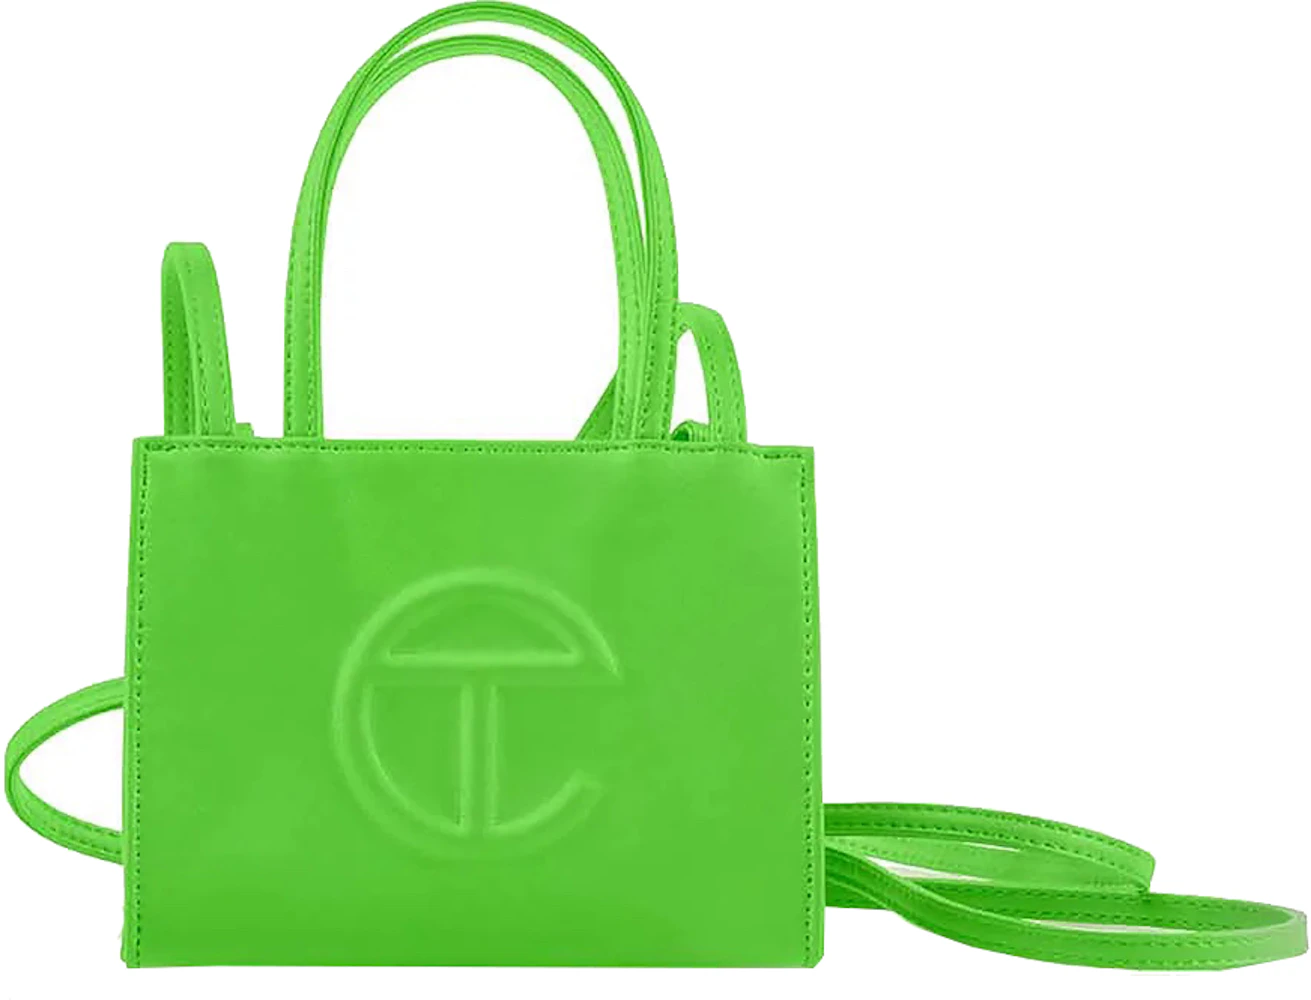 Telfar Shopping Bag Small Highlighter Green in Vegan Leather - US